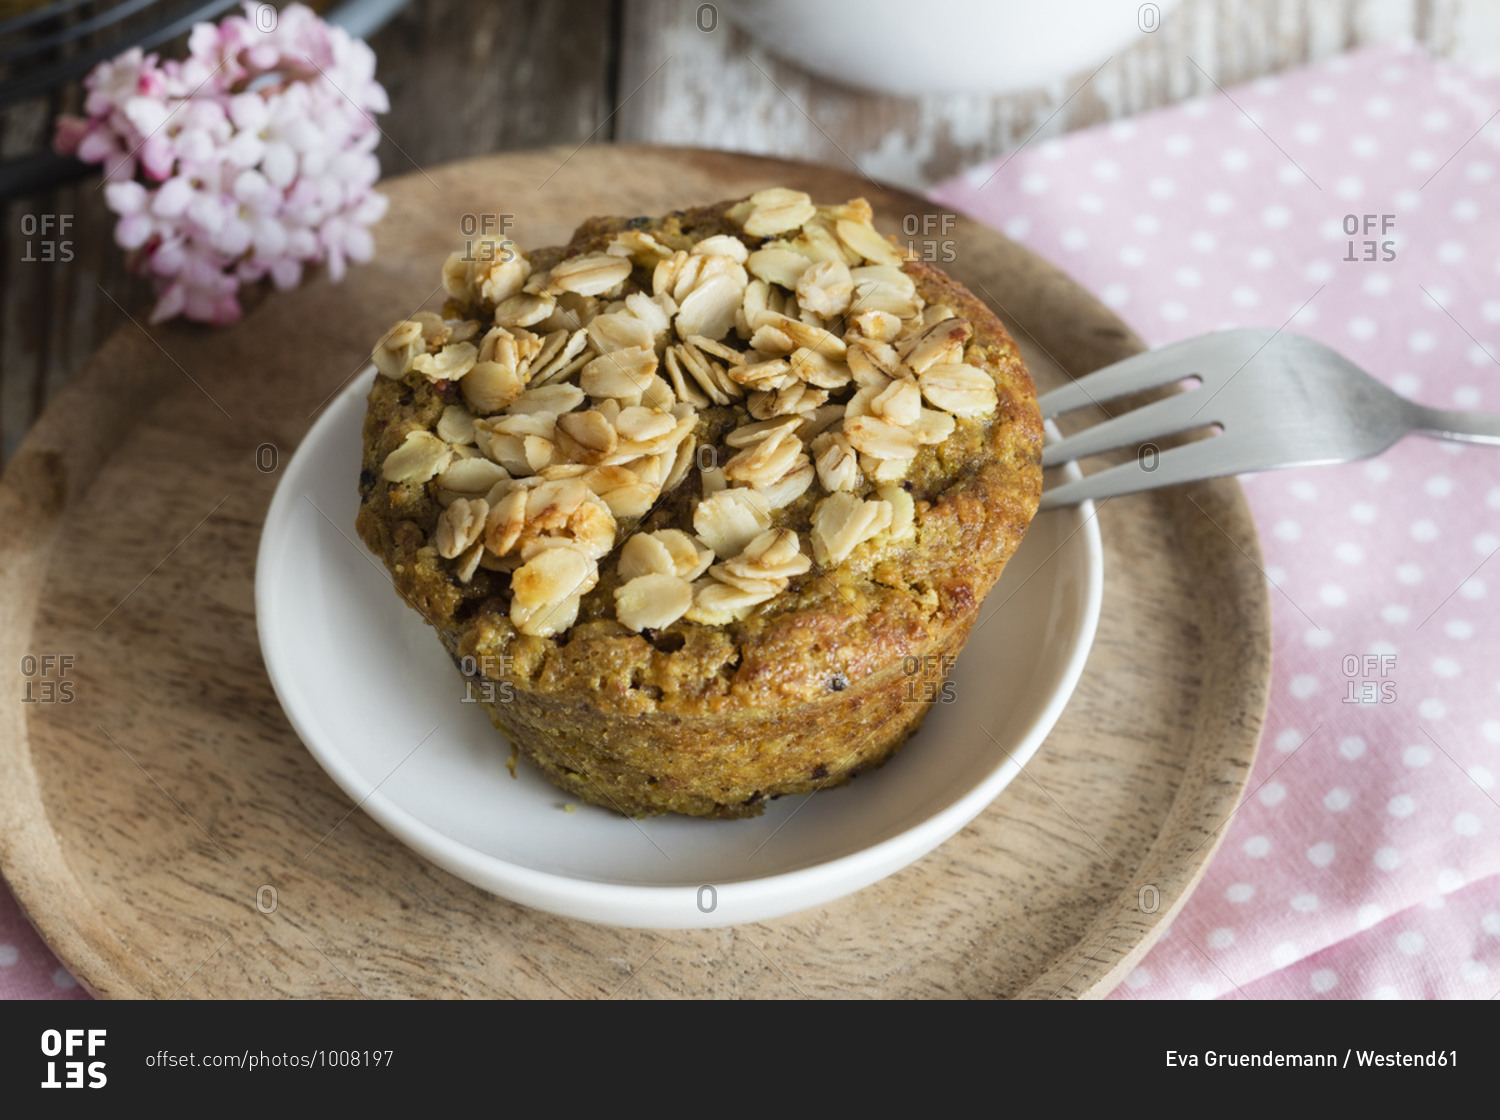 Breakfast muffins with berries- granola and turmeric- studio shot